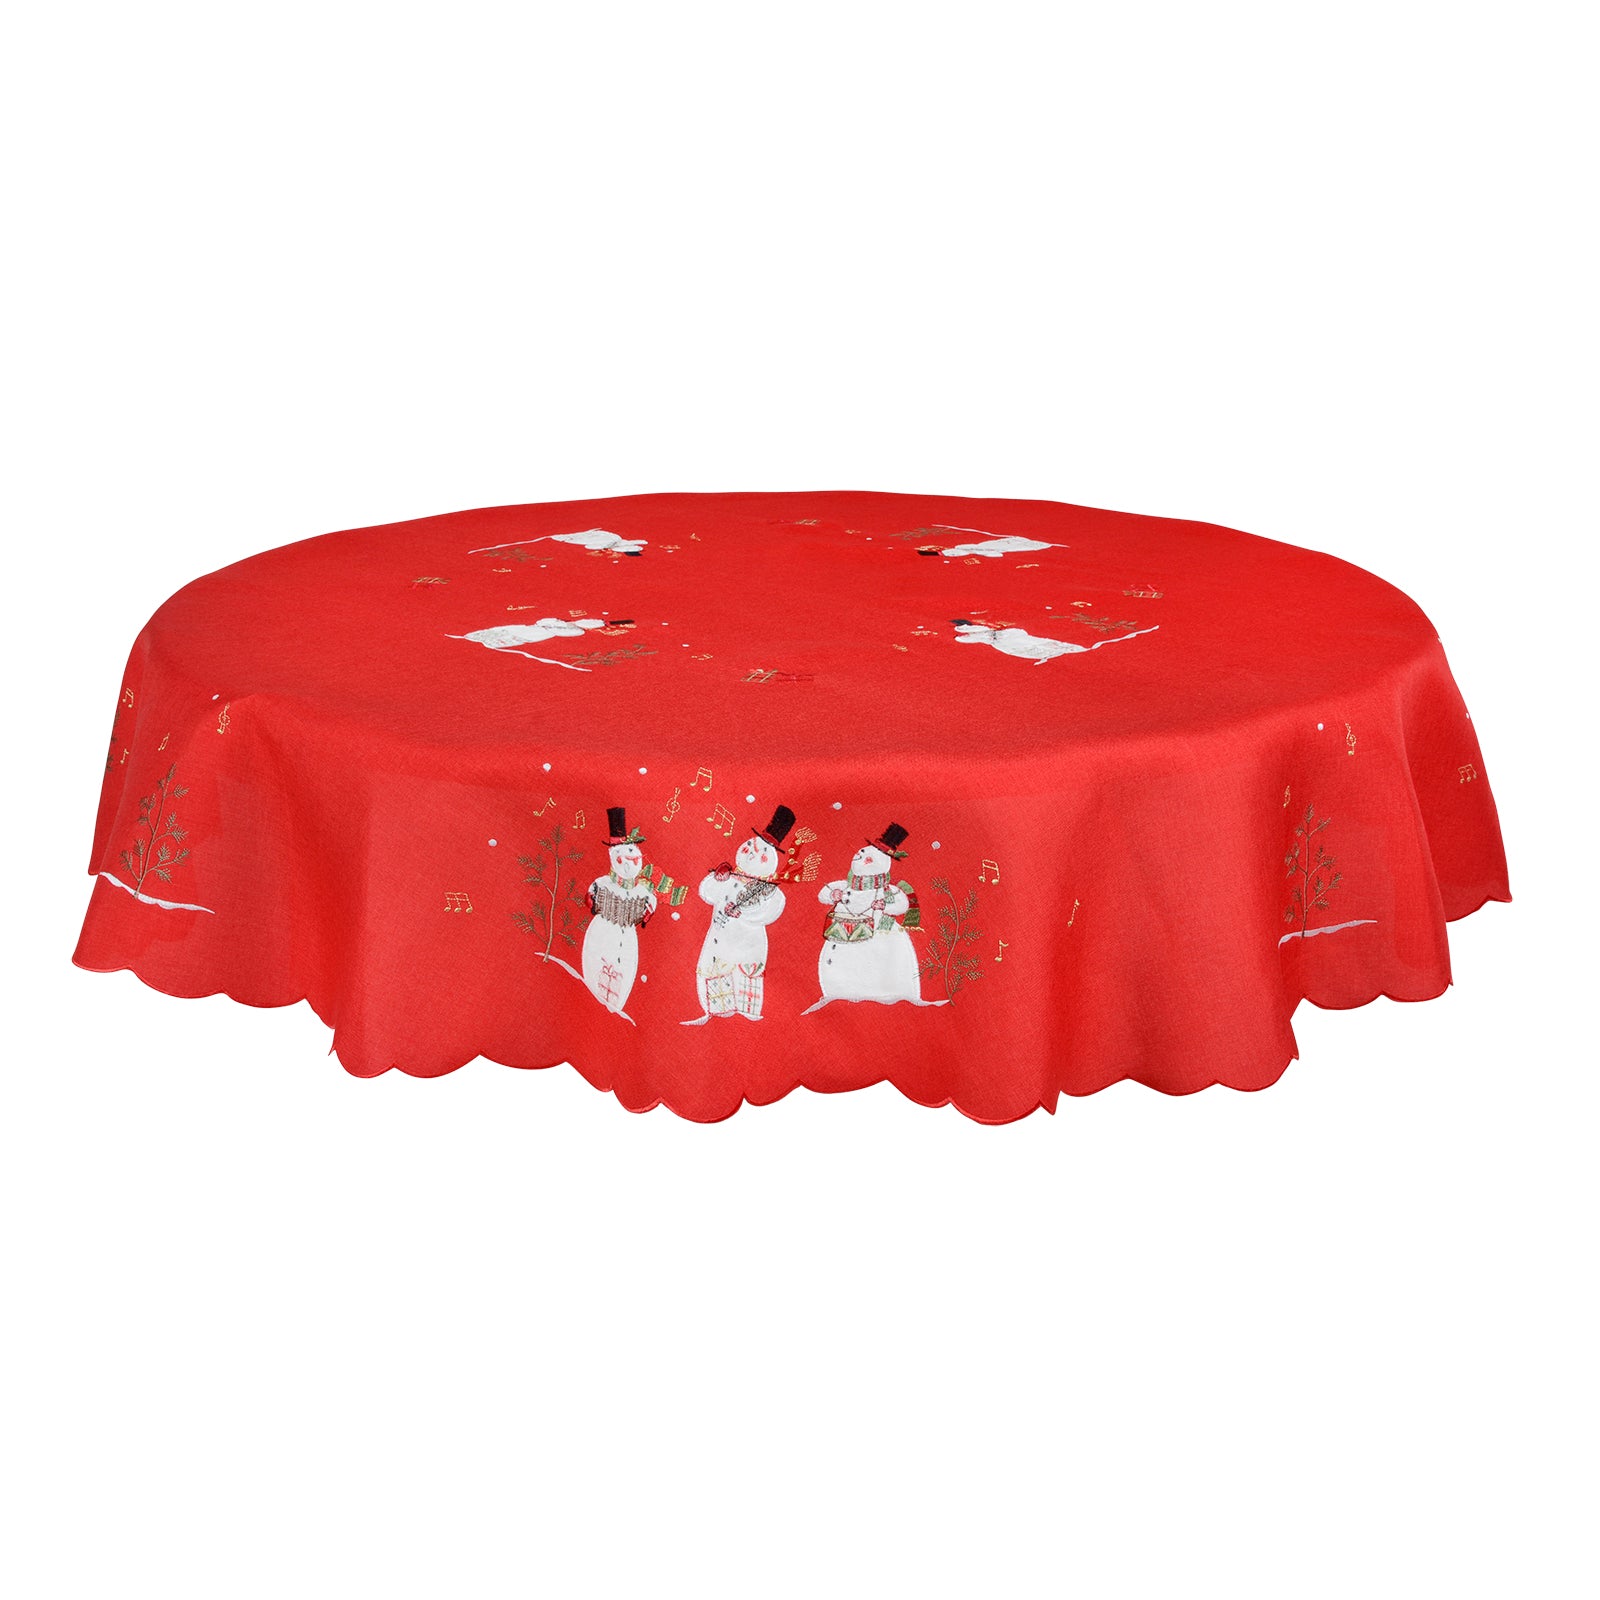 Mr Crimbo Singing Snowmen Embroidered Tablecloth/Napkin - MrCrimbo.co.uk -XS5857 - 70" Round -christmas napkins